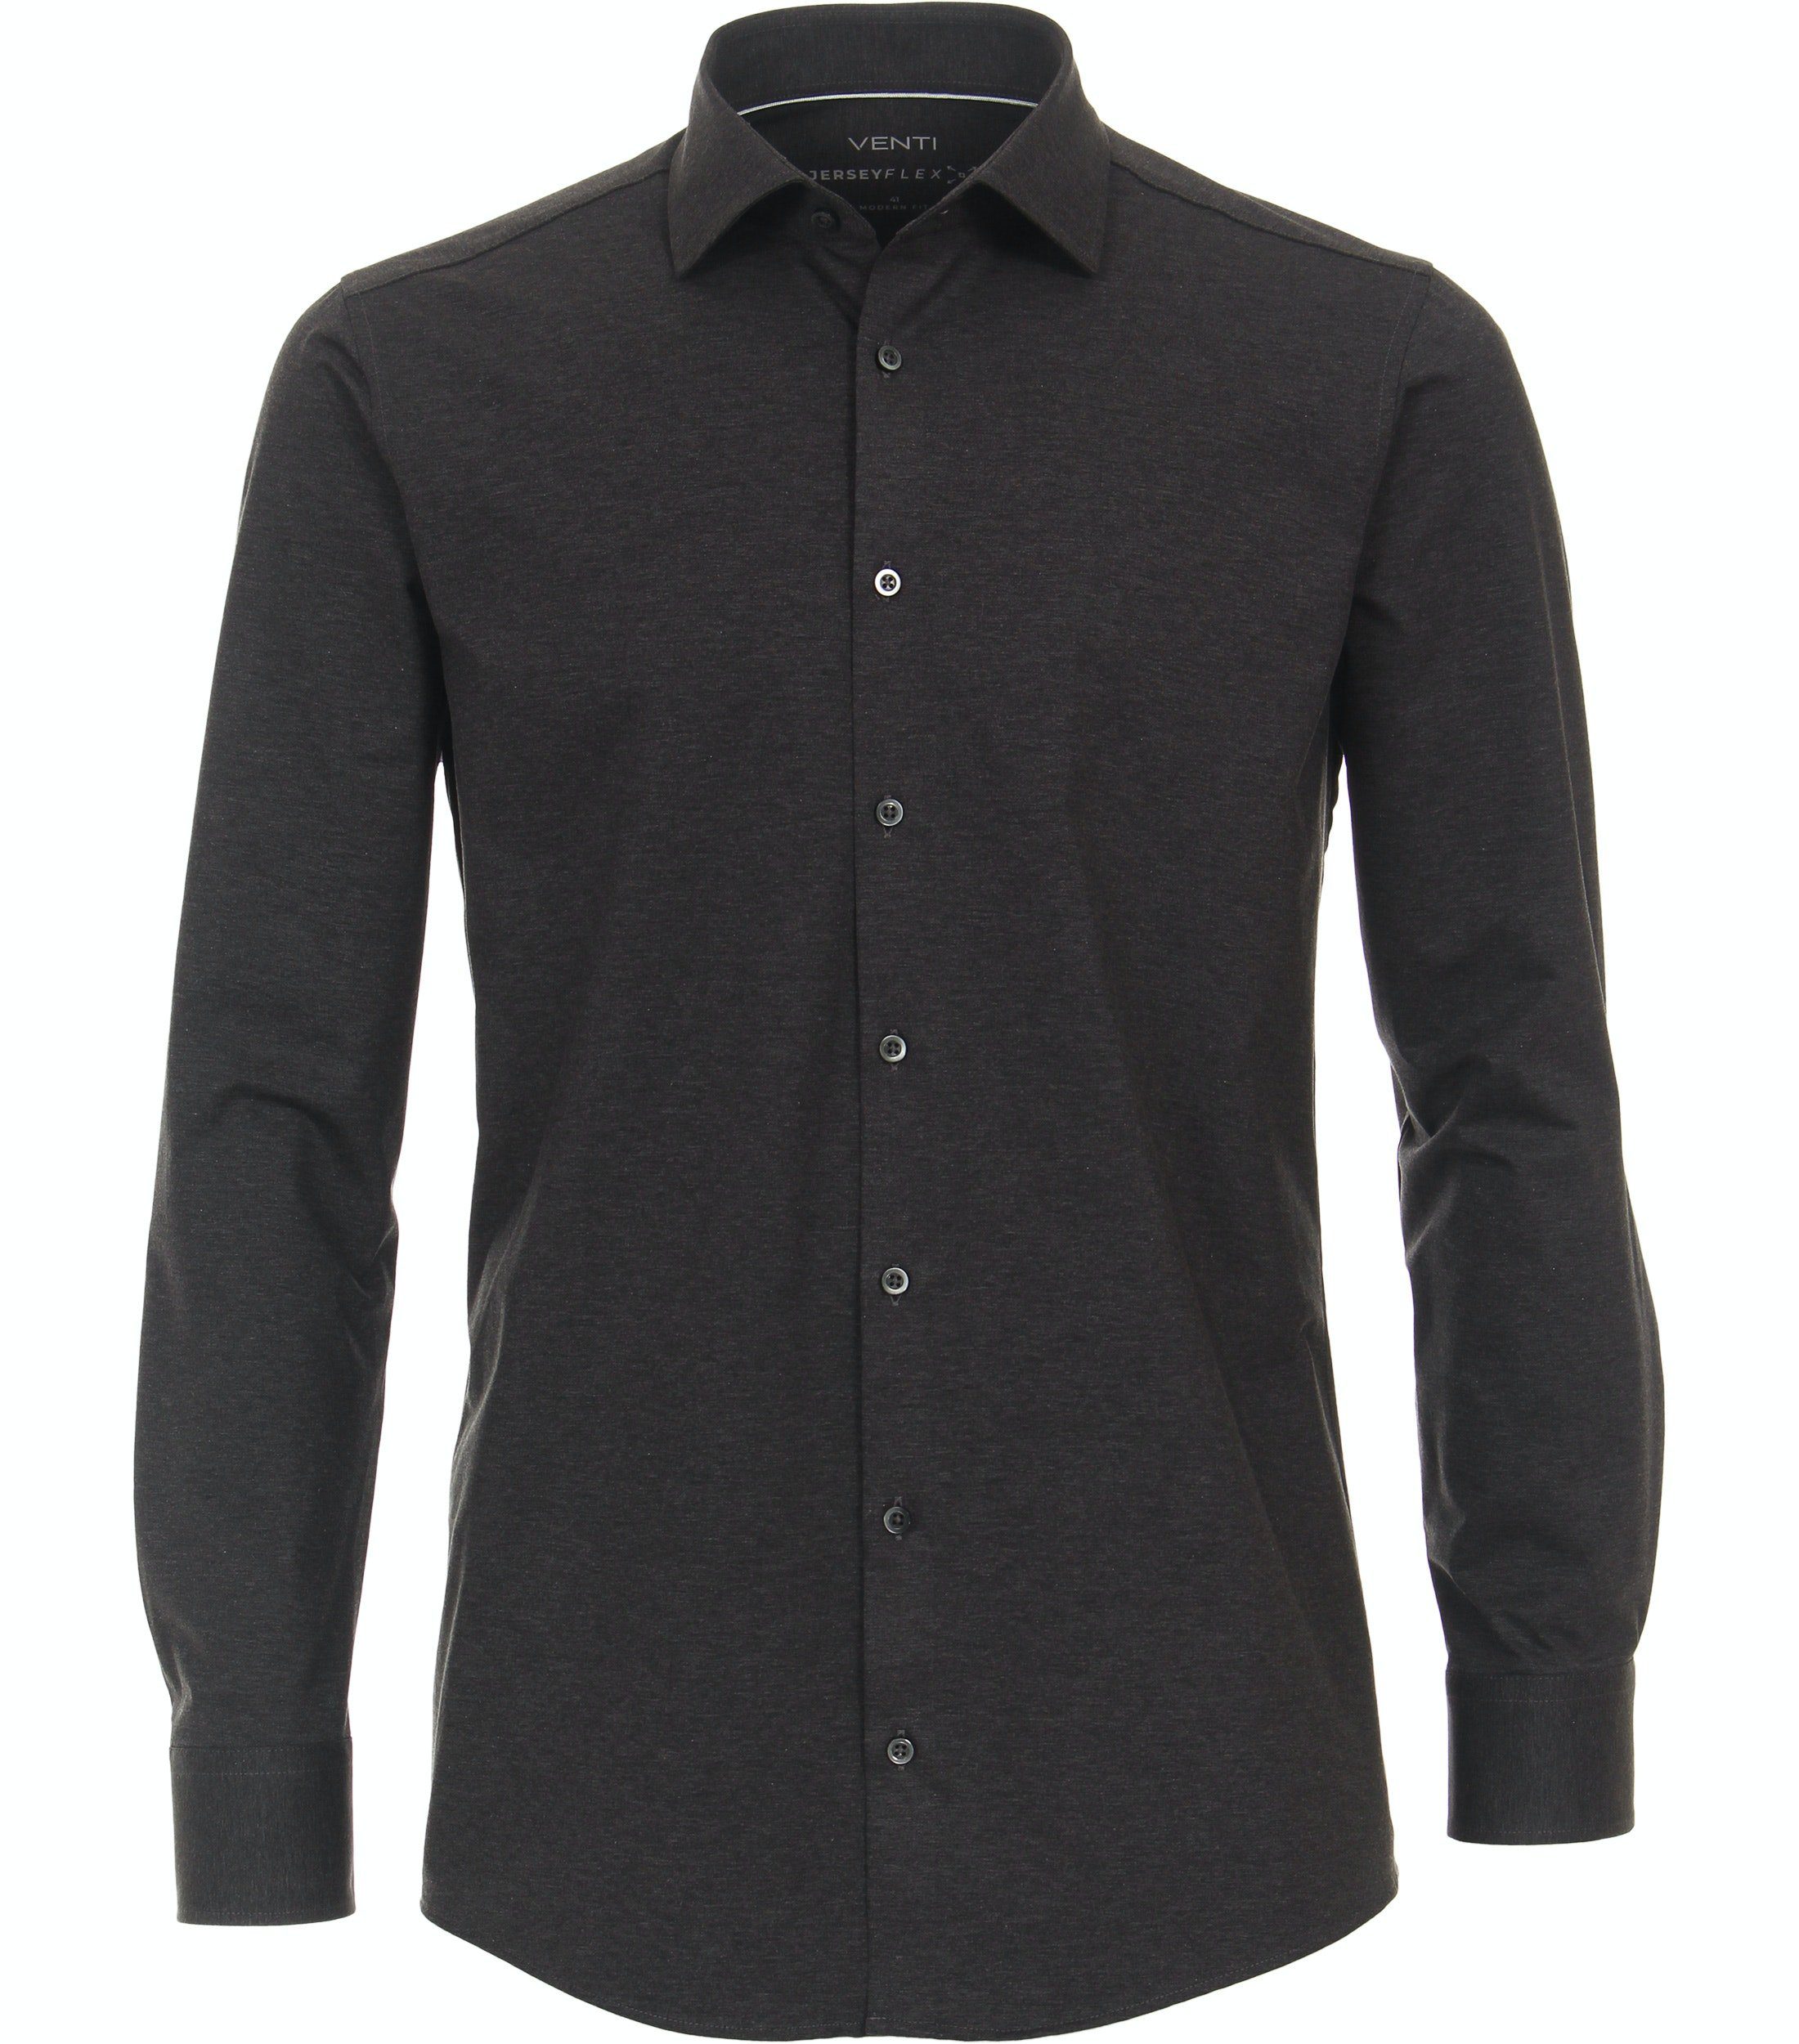 Dunkelgrau mit Anthrazit - VENTI - Fit - Businesshemd Einfarbig Jerseyhemd Stretch Langarm - Modern